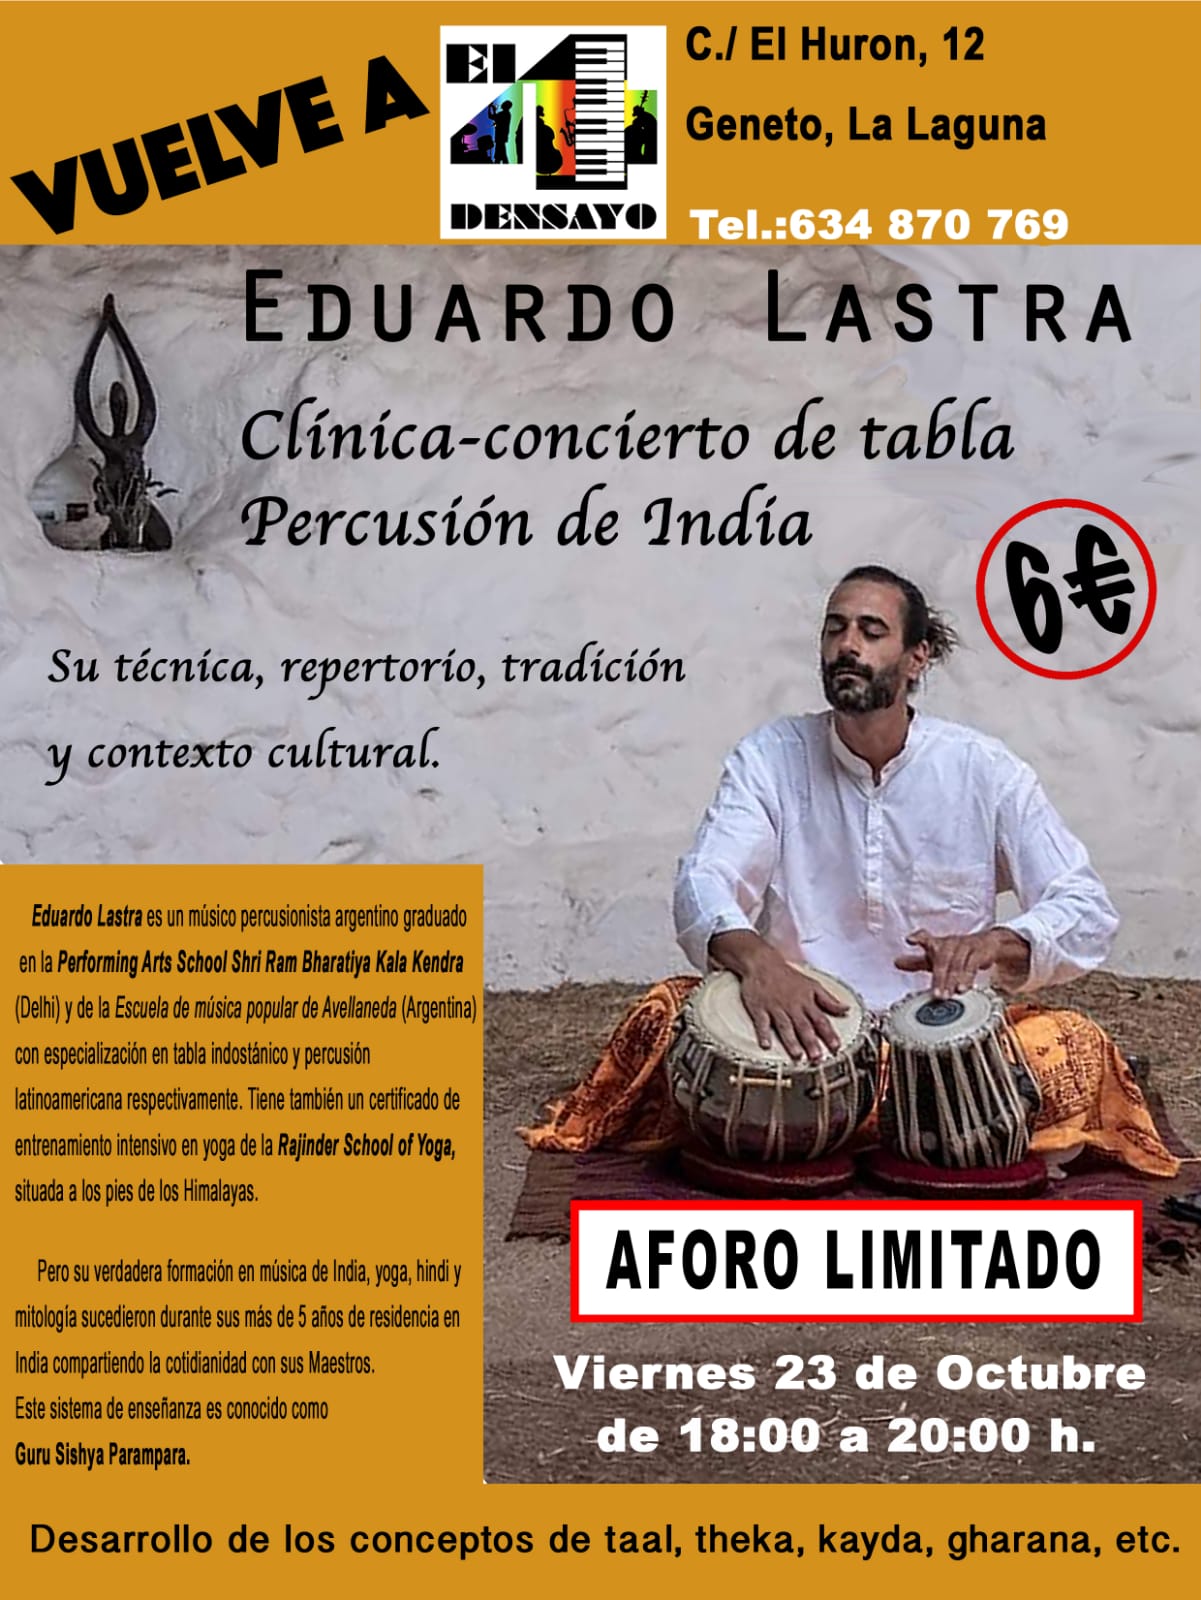 Clínica concierto de tabla percusión de India Eduardo Lastra